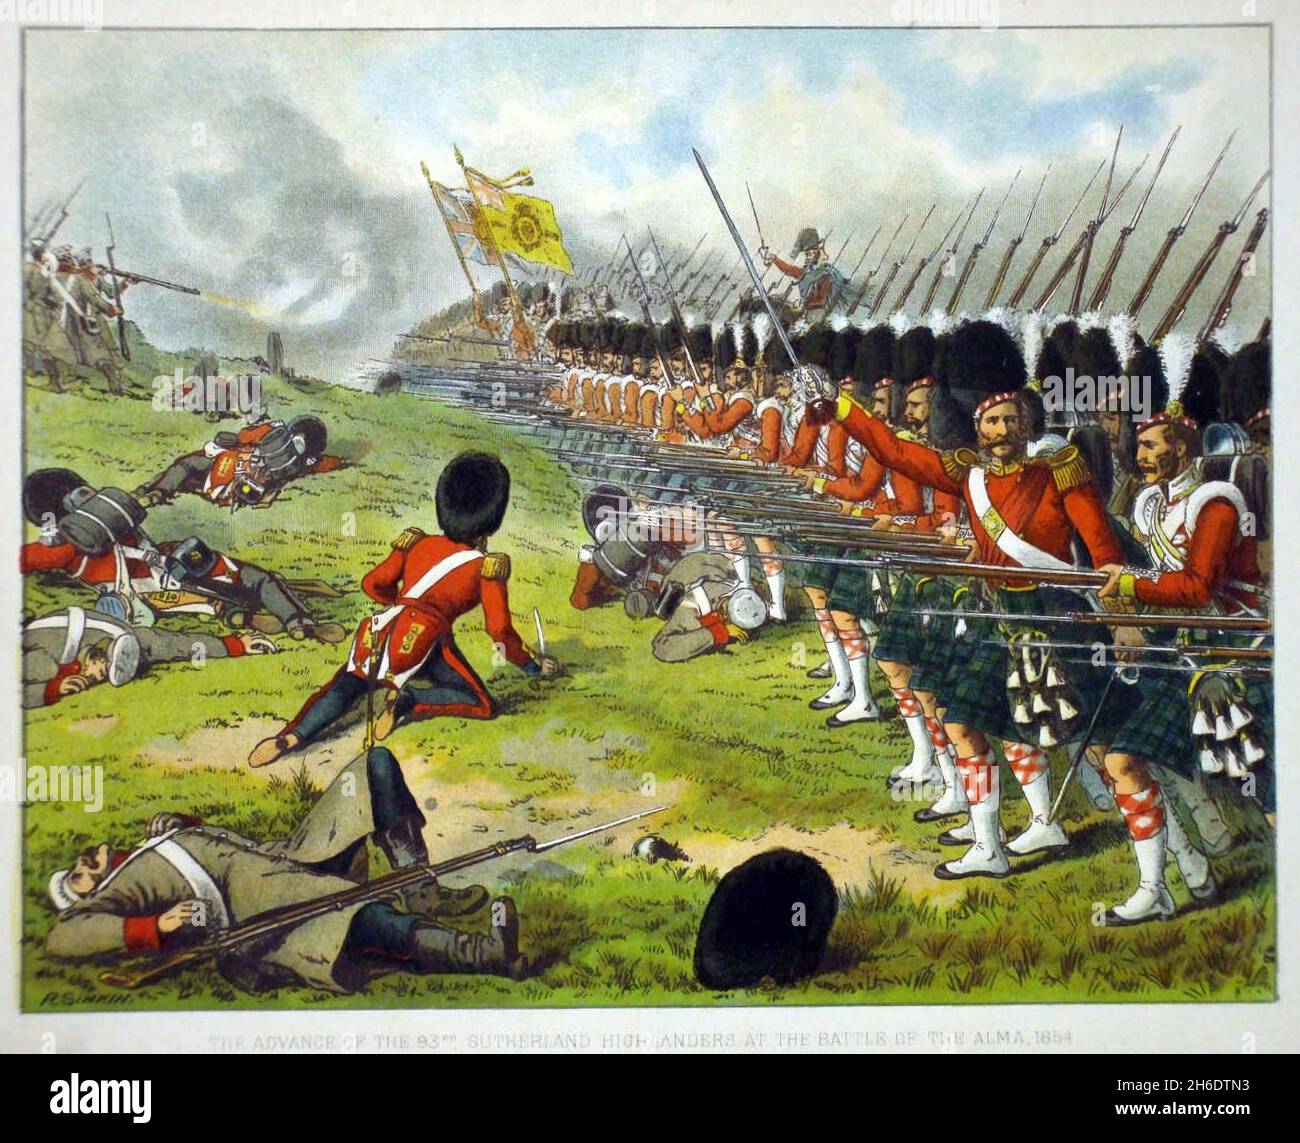 Schlacht von Alma Sutherland Highlanders. Die Argyll and Sutherland Highlanders (Princess Louise's) waren ein Linieninfanterieregiment der britischen Armee, das bis zur Fusion mit dem Royal Regiment of Scotland am 28. März 2006 bestand. Die Schlacht an der Alma (kurz für Schlacht am Alma-Fluss) war eine Schlacht im Krimkrieg zwischen einer alliierten Expeditionstruppe (bestehend aus französischen, britischen und ägyptischen Truppen) und russischen Streitkräften, die am 20. September 1854 die Krim verteidigten. Die Verbündeten hatten am 14. September eine überraschende Landung auf der Krim gemacht. Die alliierten Kommandeure, Maréchal Jacques Leroy de Stockfoto